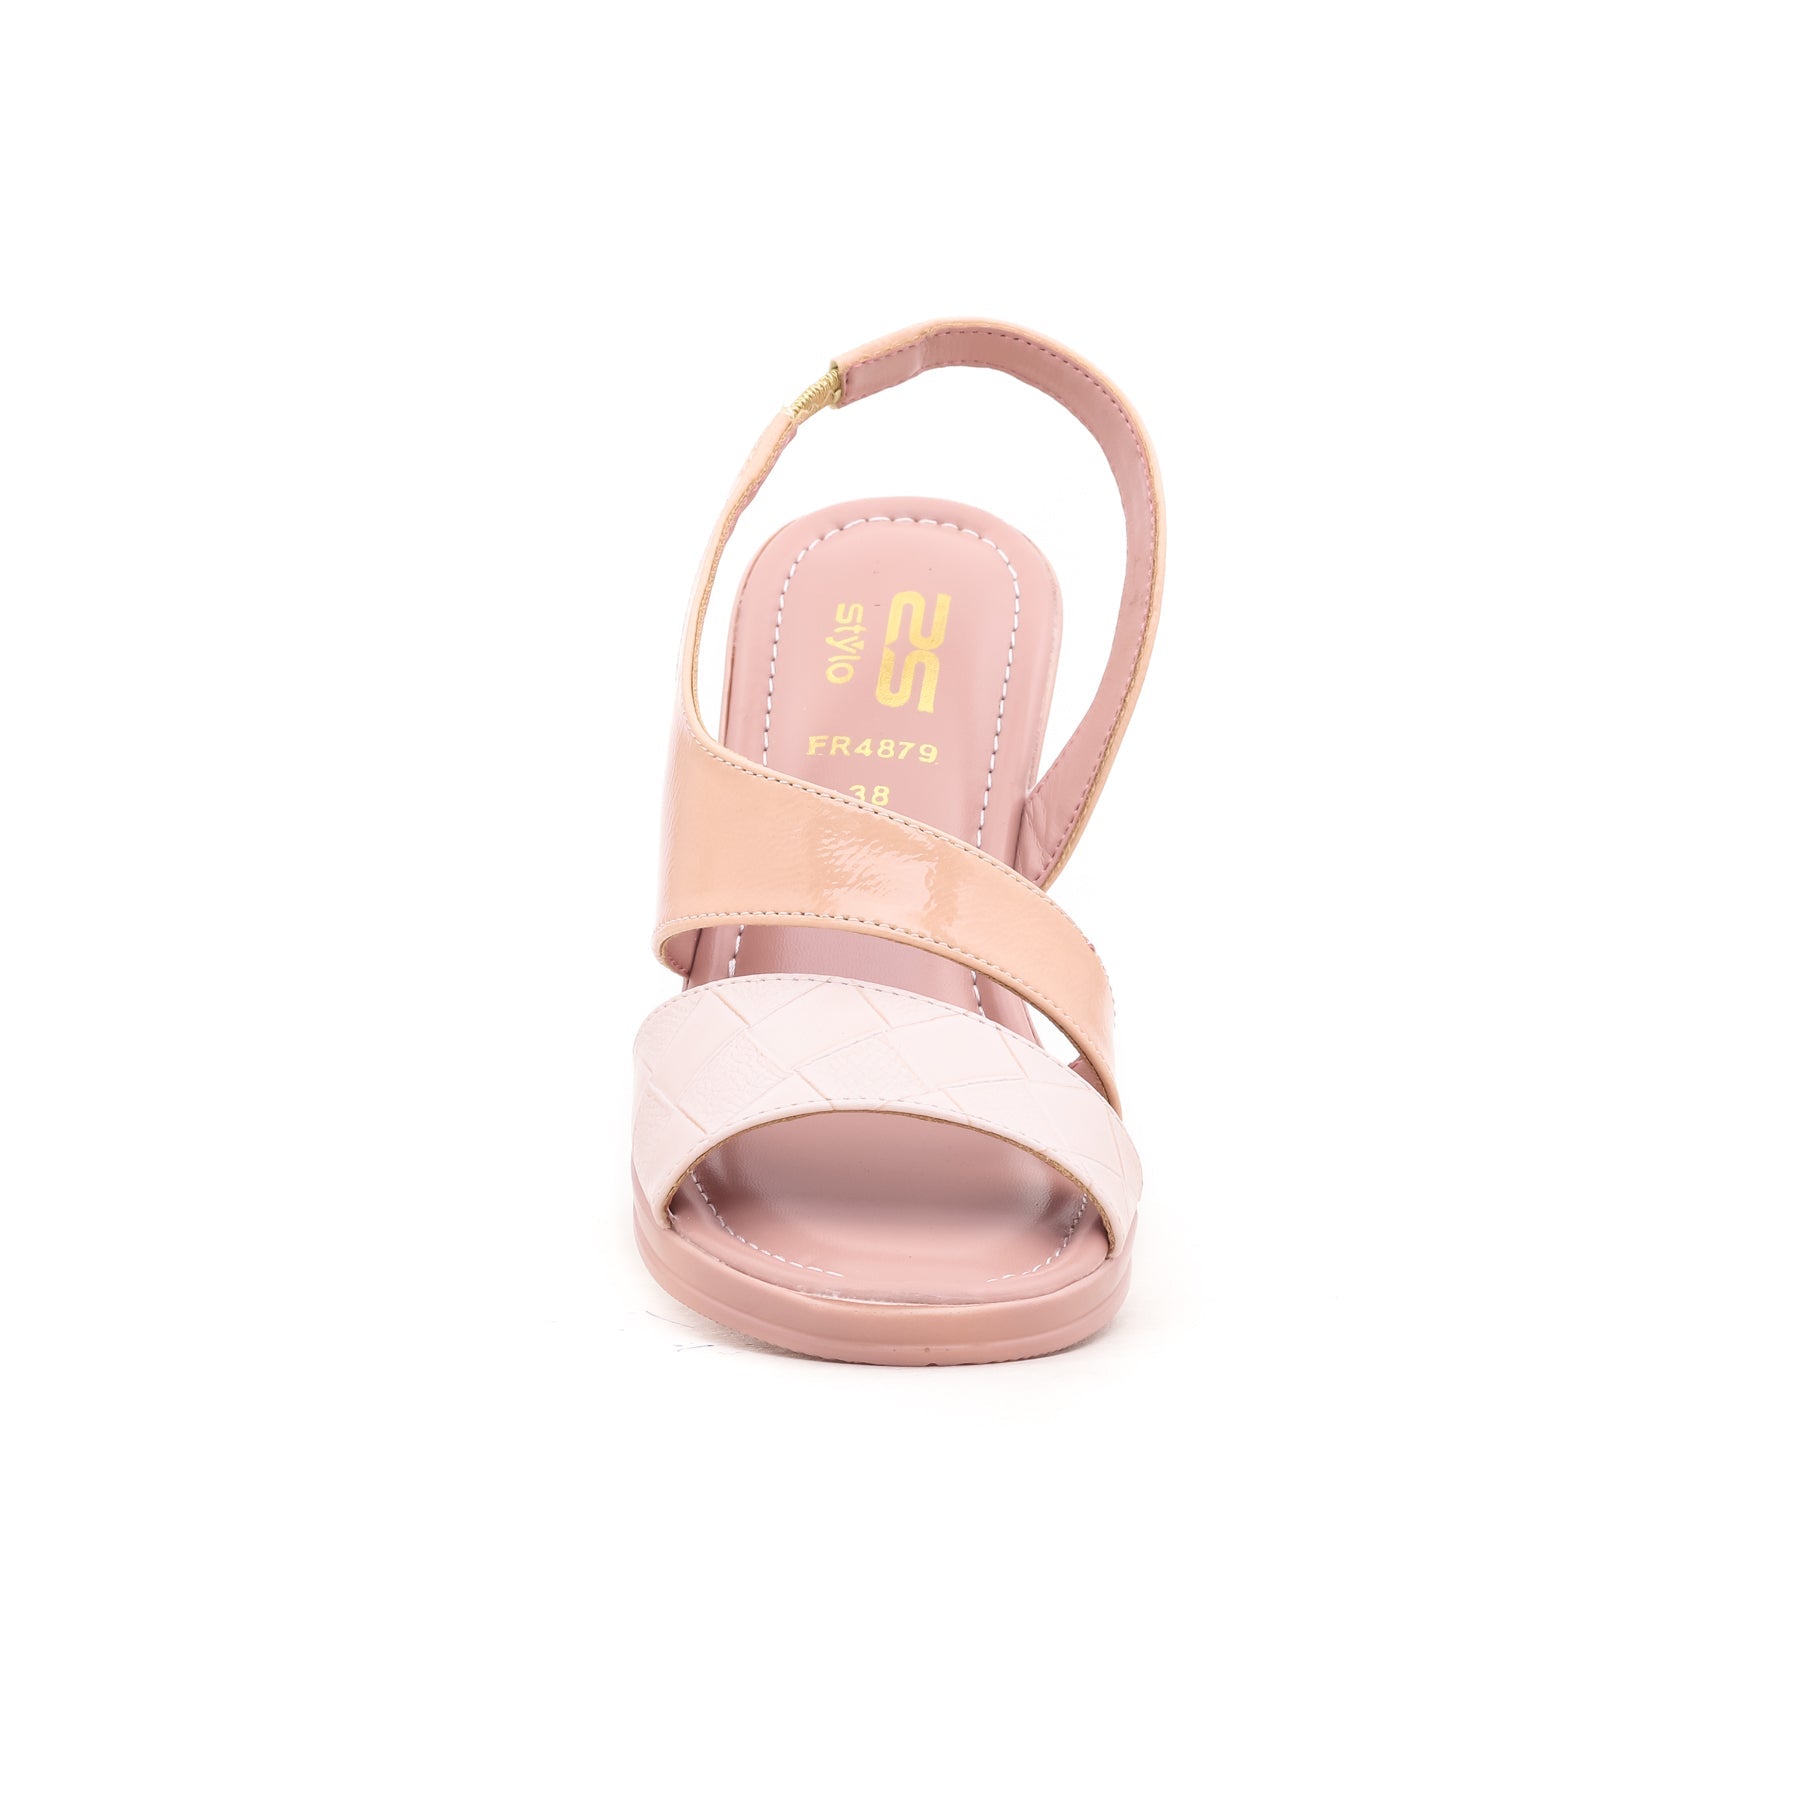 Pink Formal Sandal FR4879